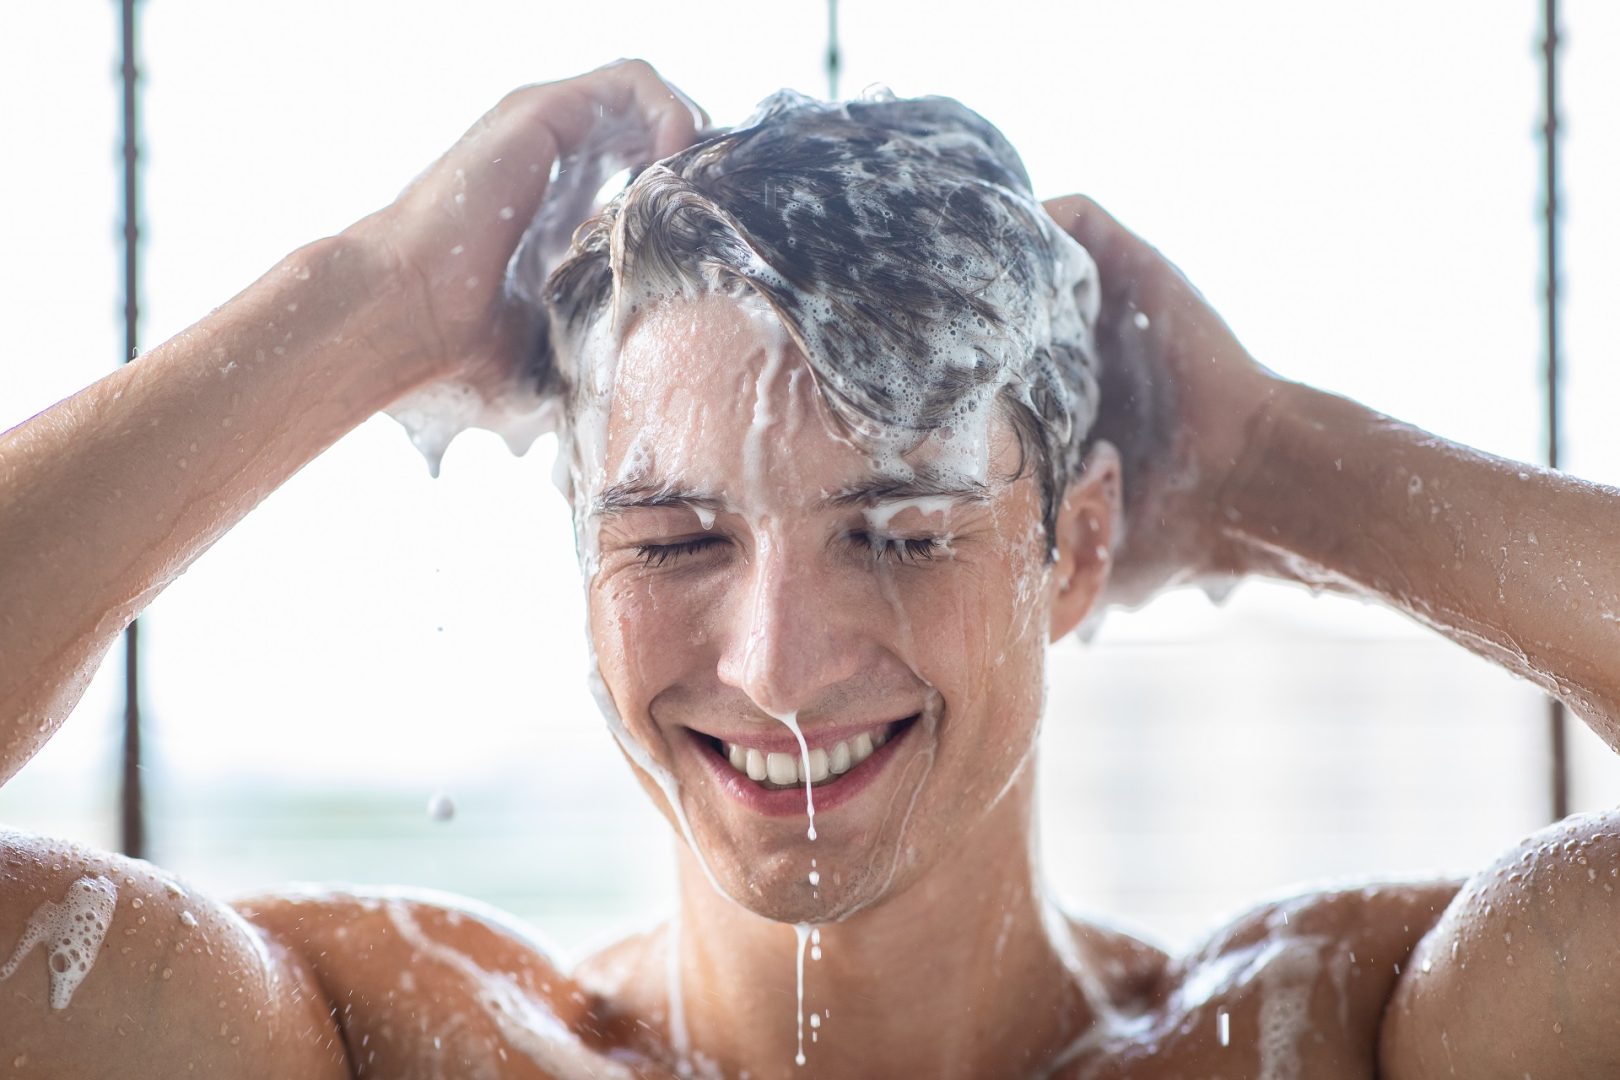 mannequin masculin se lavant les cheveux avec du shampoing